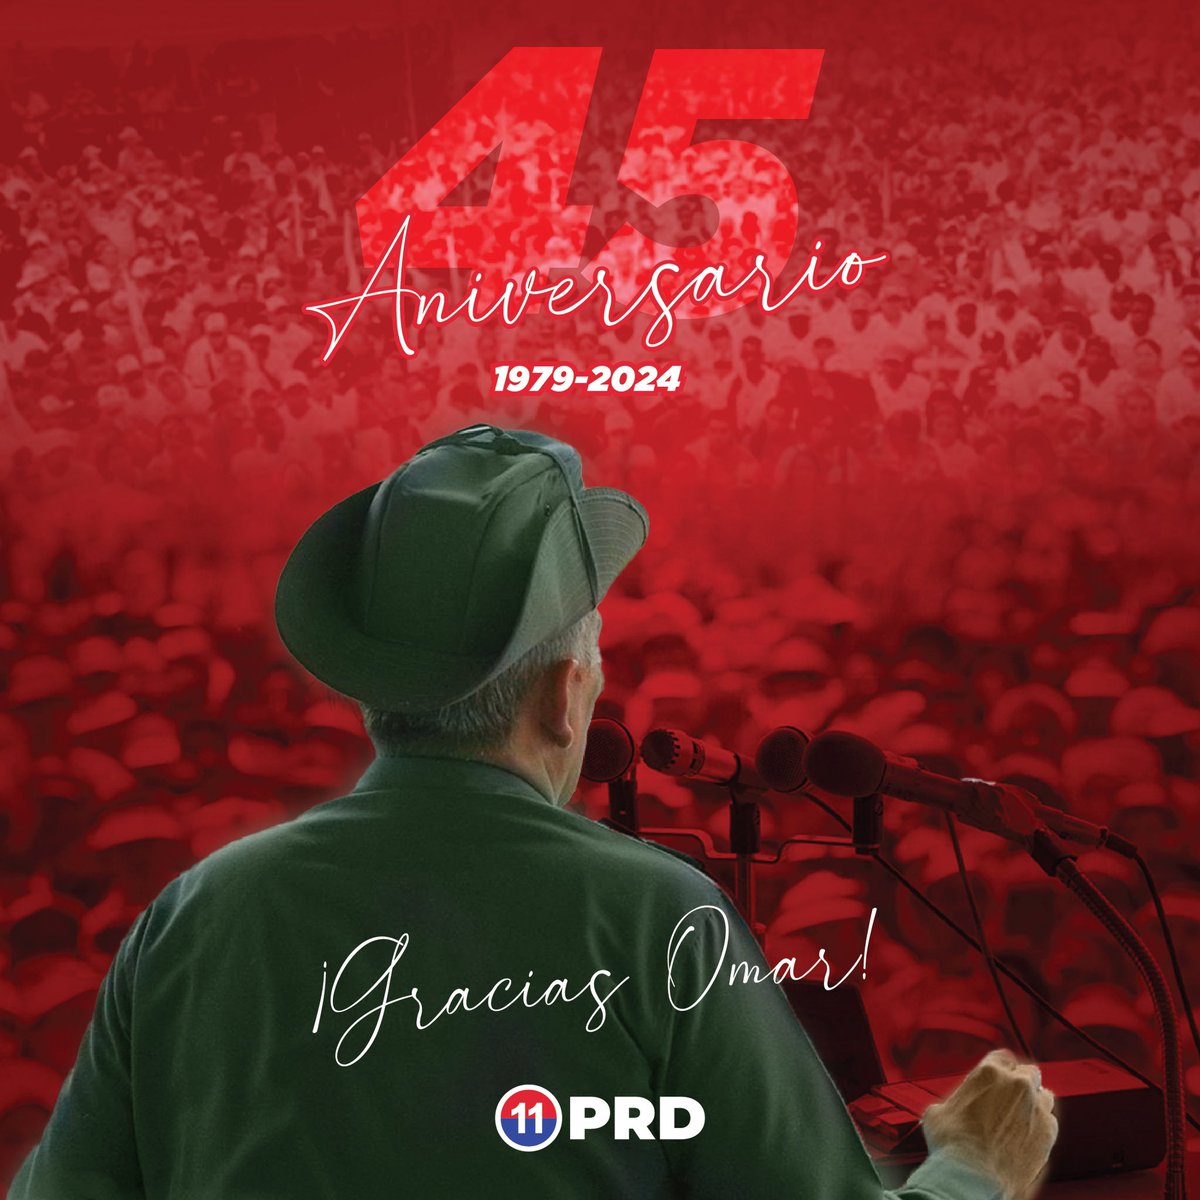 Hoy celebramos con orgullo nuestros 45 años. Gracias, Omar Torrijos, por crear el partido más grande de Panamá. Tu sabiduría y dedicación han sido fundamentales para nuestro camino.